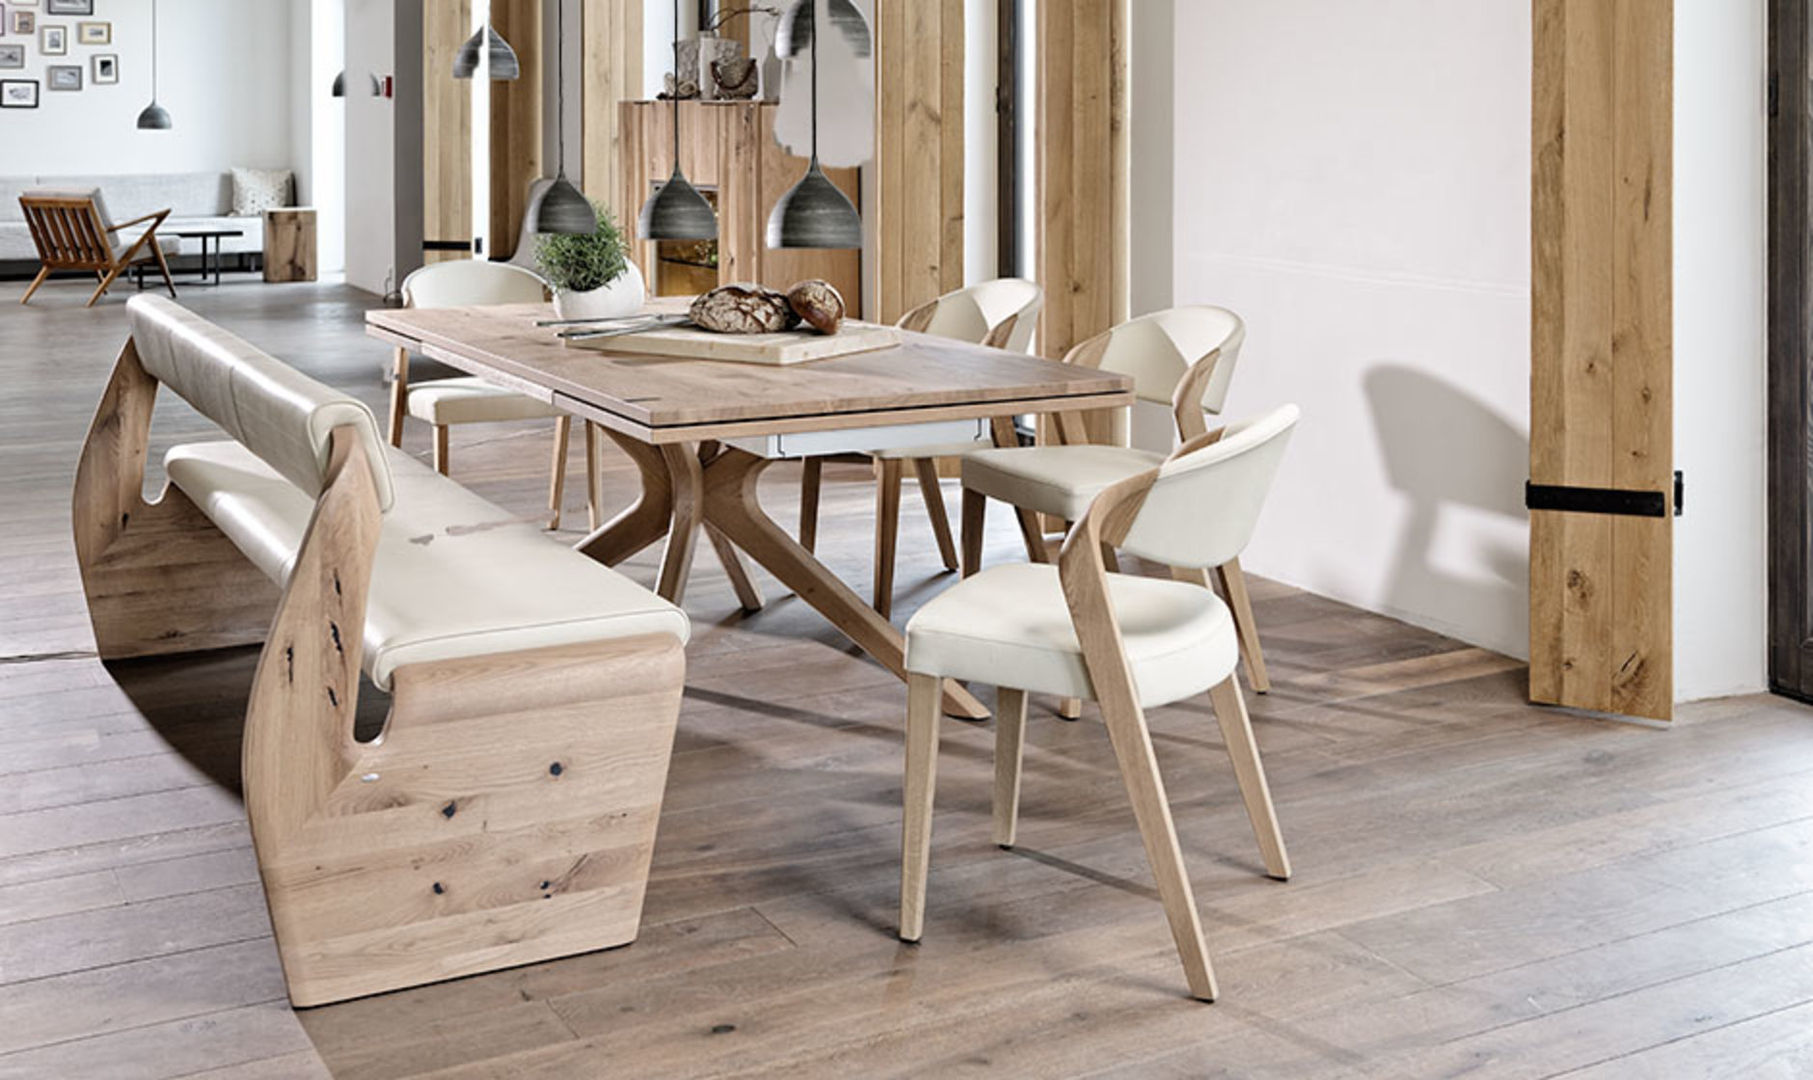 Muebles de diseño alemán, Imagine Outlet Imagine Outlet Salas de jantar modernas Madeira Efeito de madeira Mesas